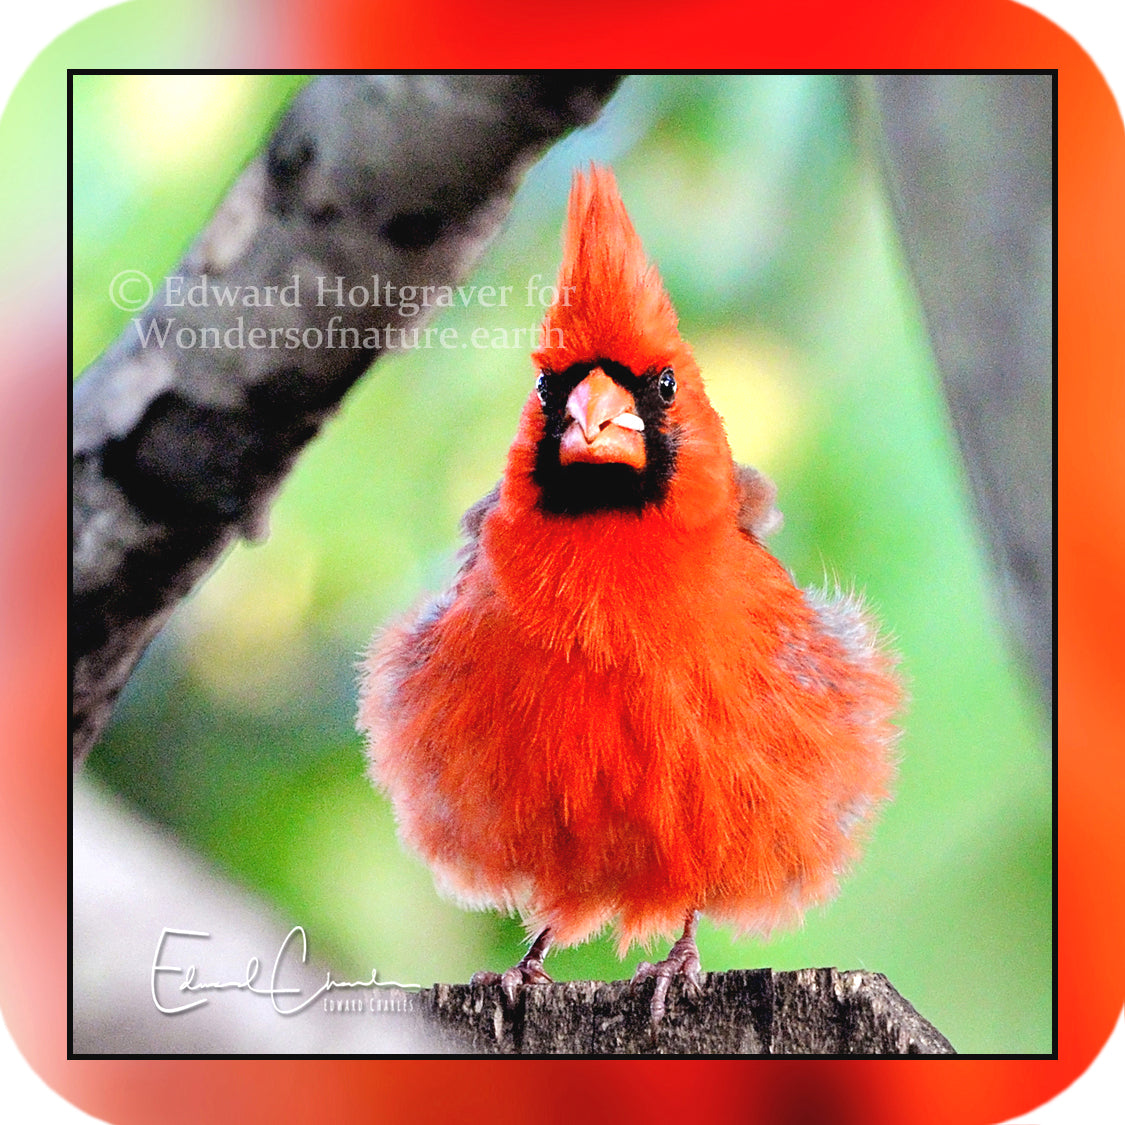 Birds - Cardinal